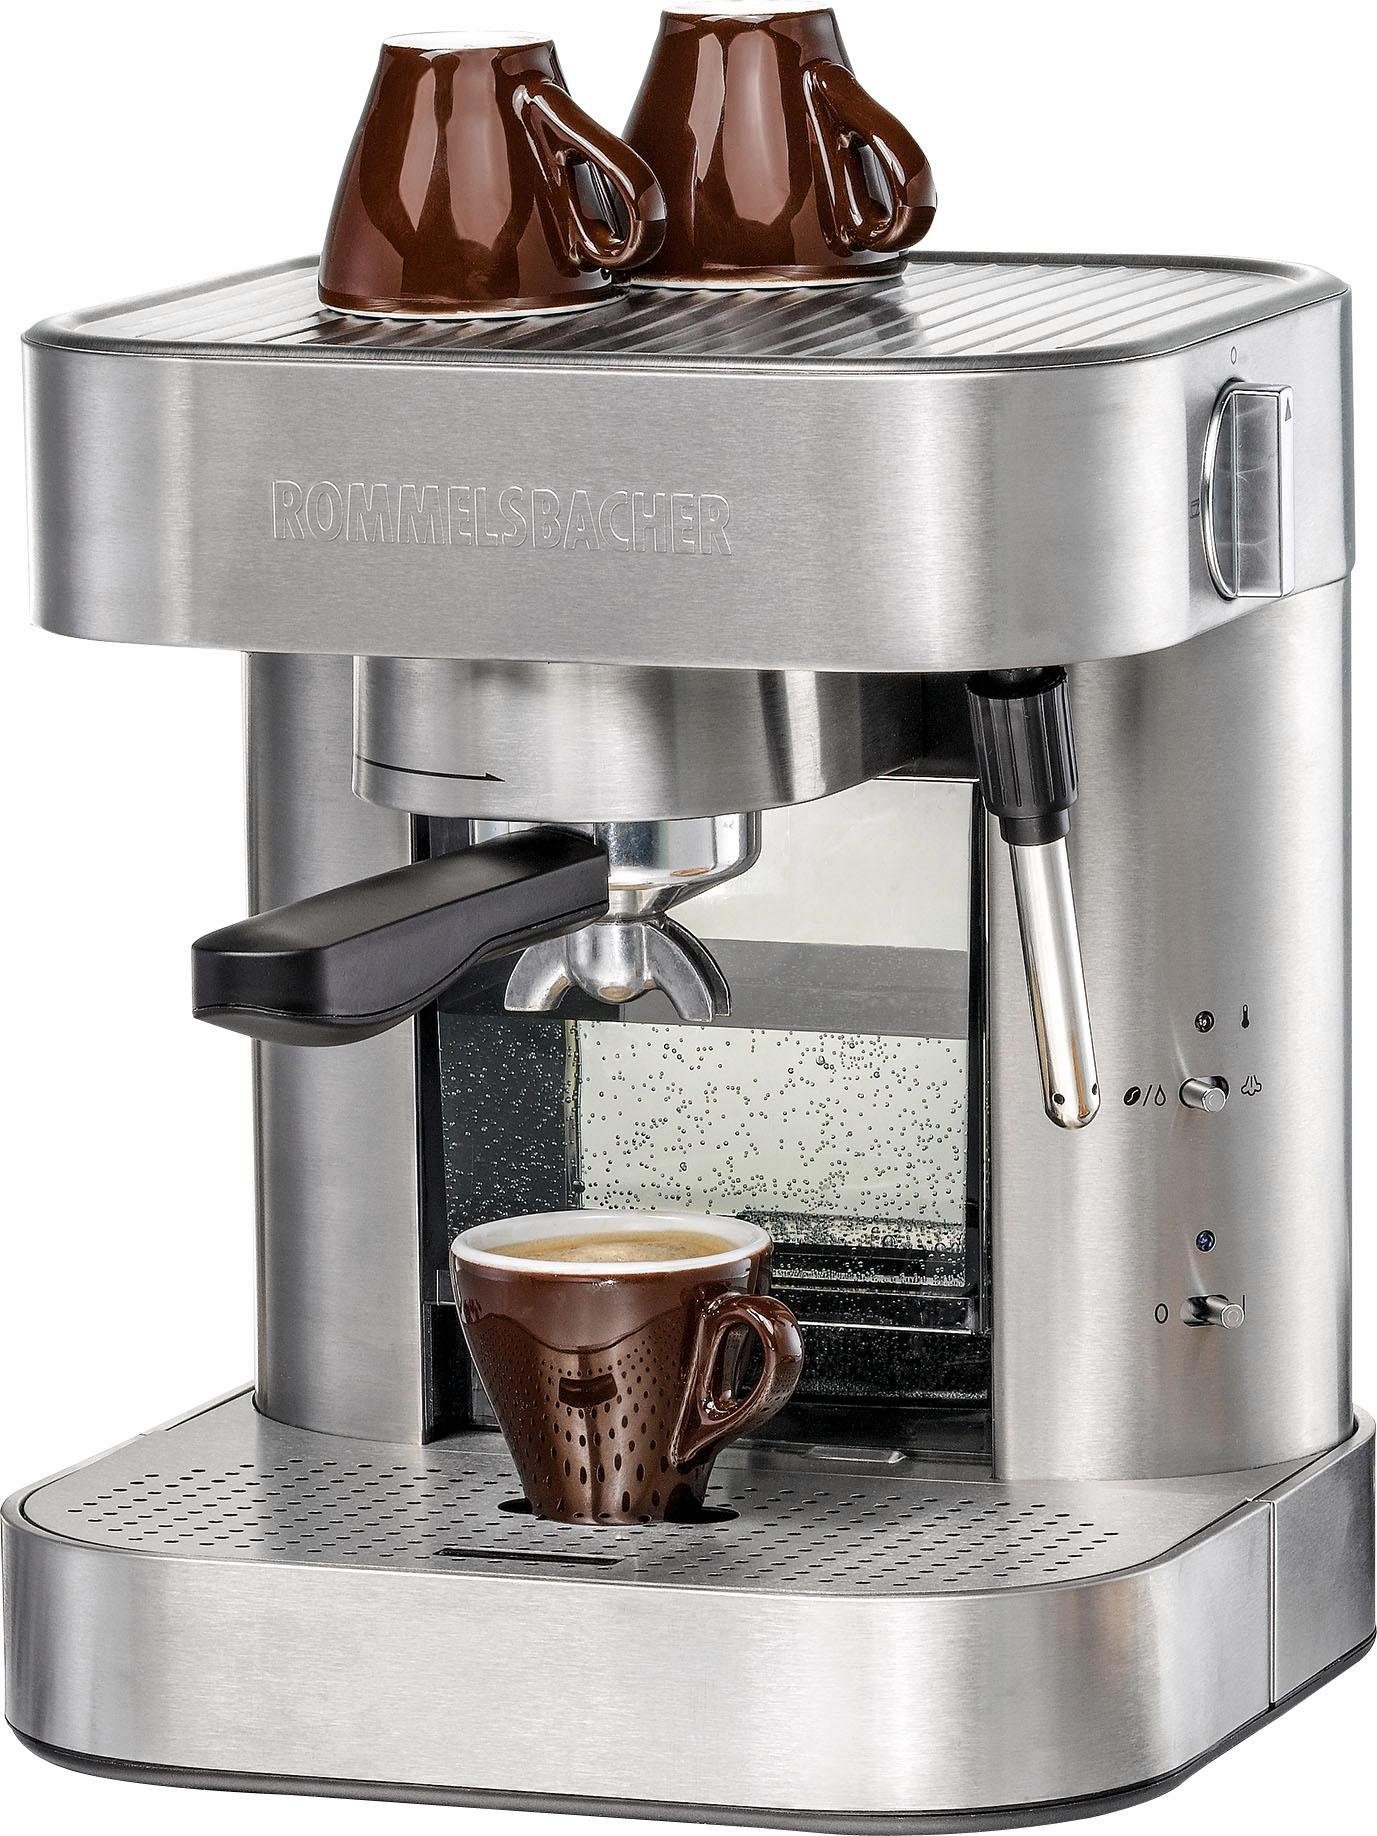 Rommelsbacher Espressomaschine EKS 1510 online kaufen | OTTO